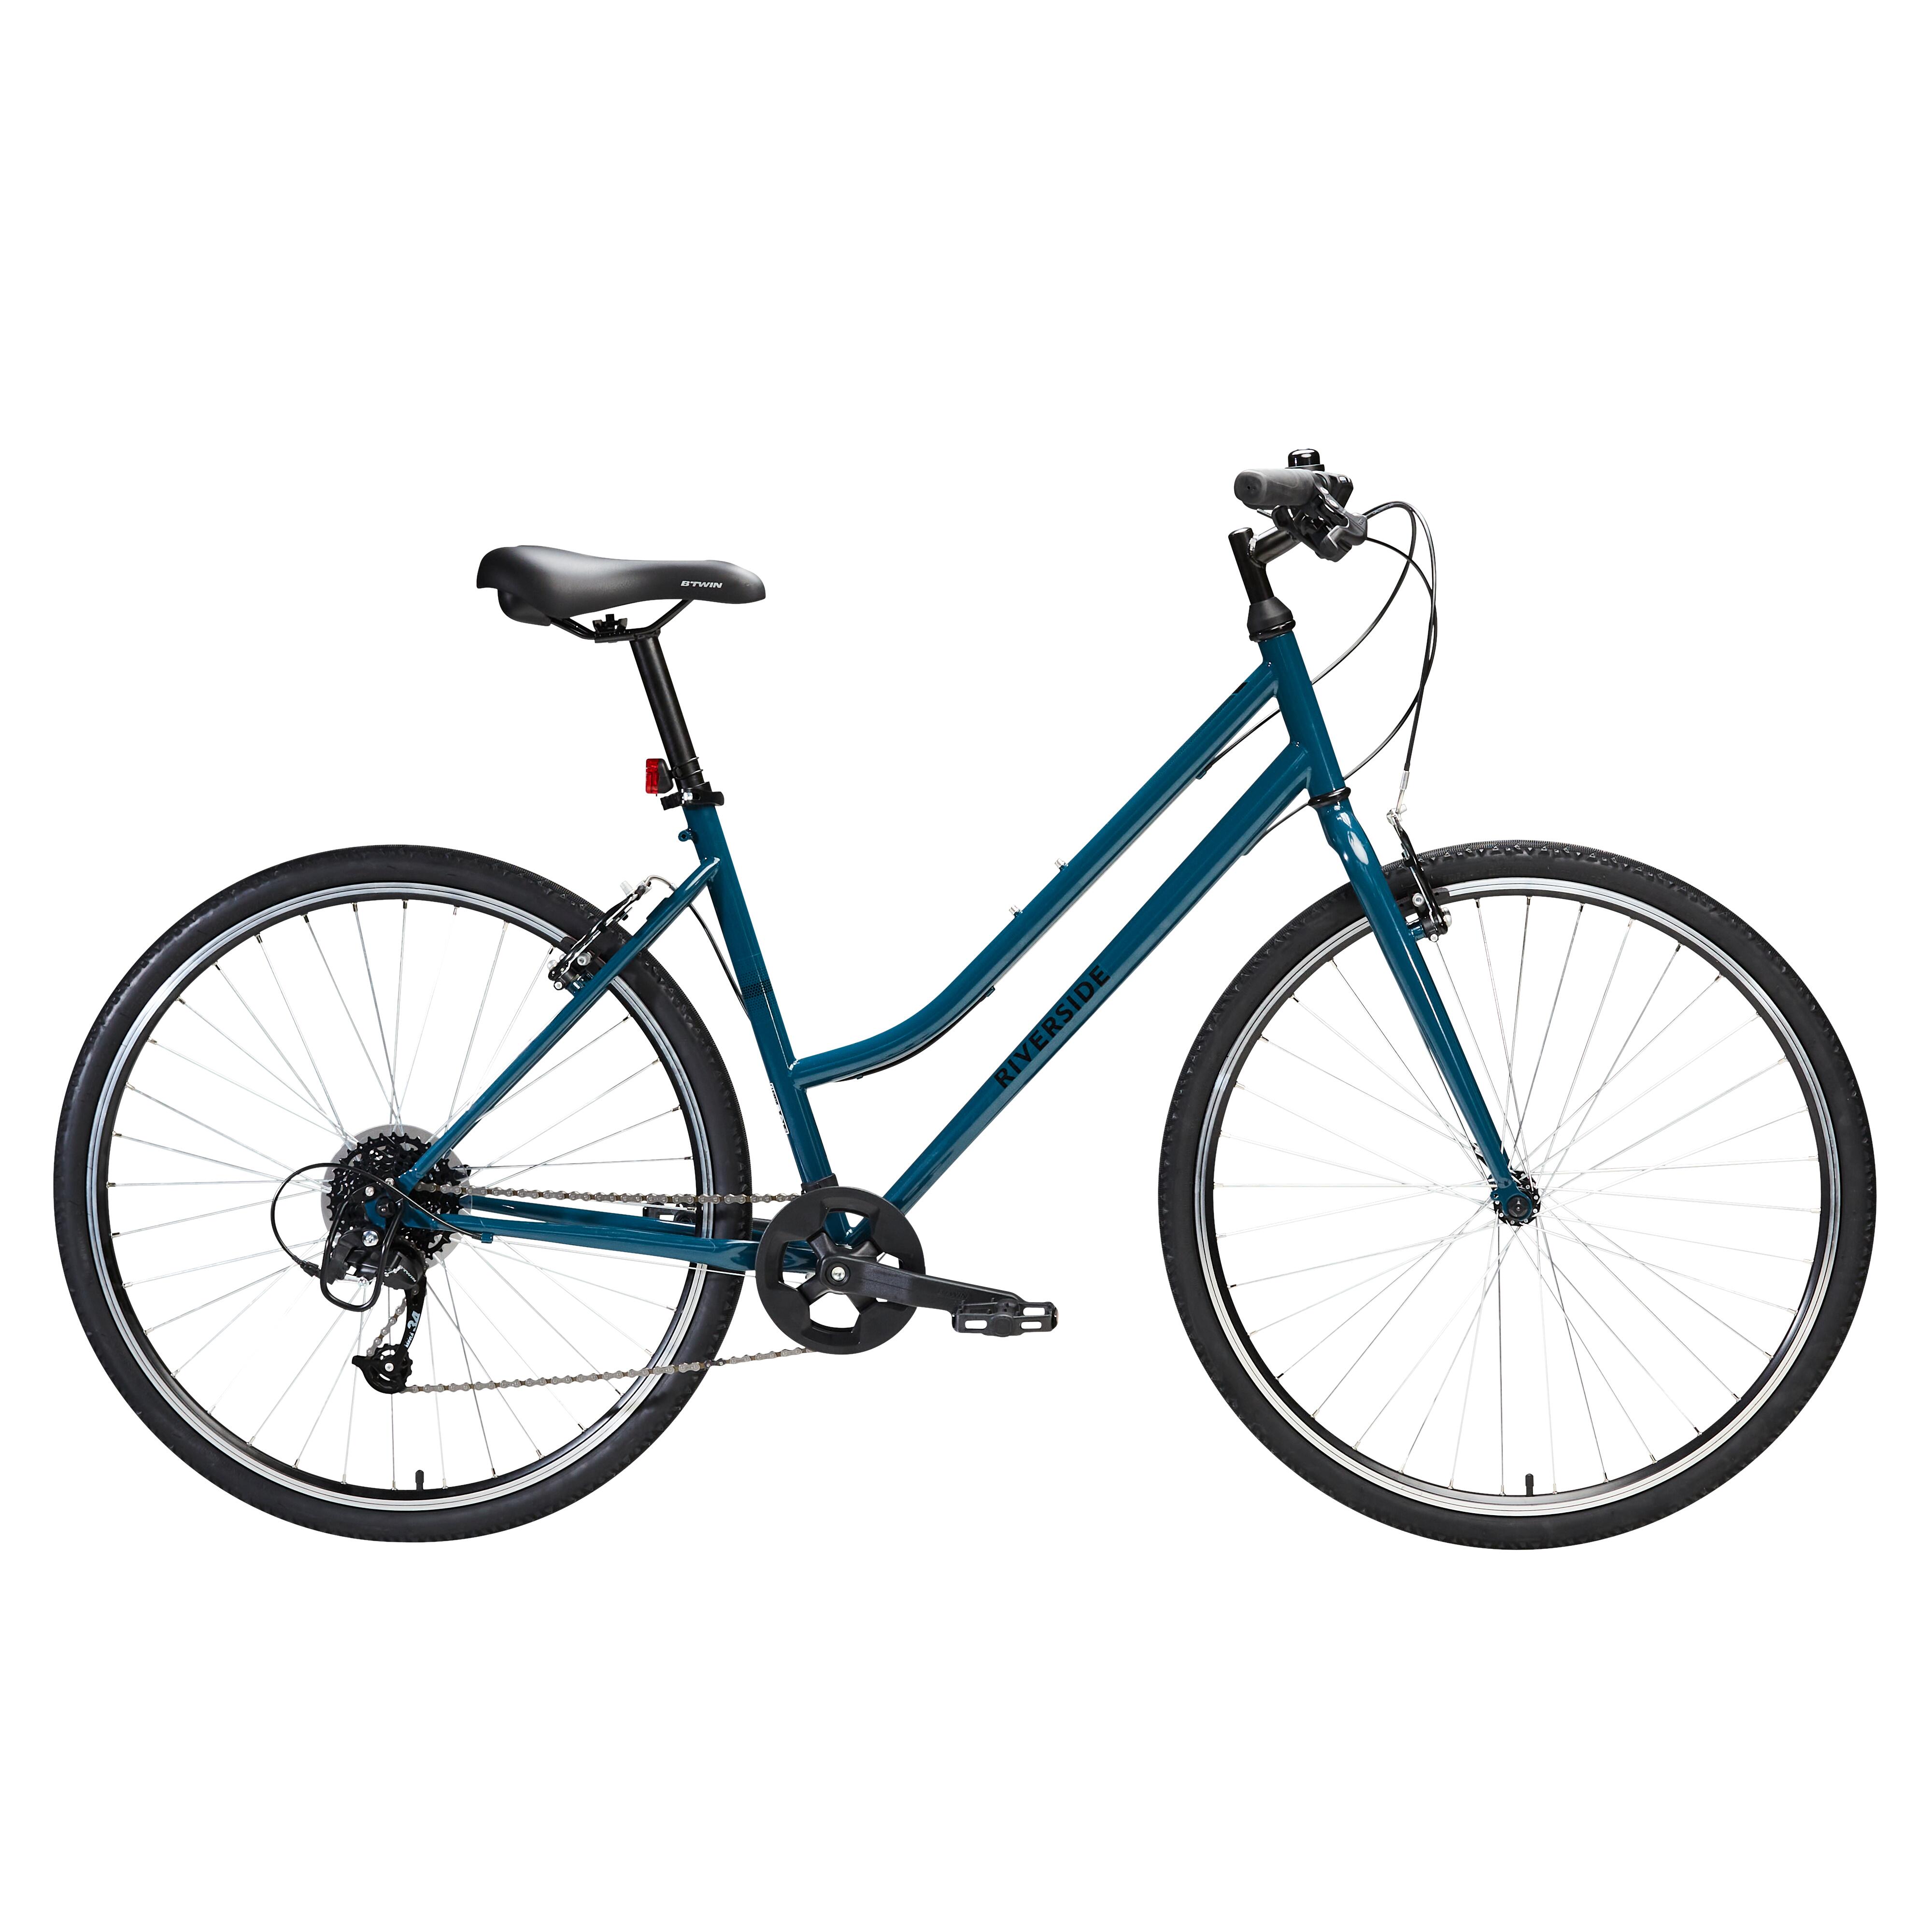 Bicicletă polivalentă Riverside 120 Albastru Petrol La Oferta Online decathlon imagine La Oferta Online